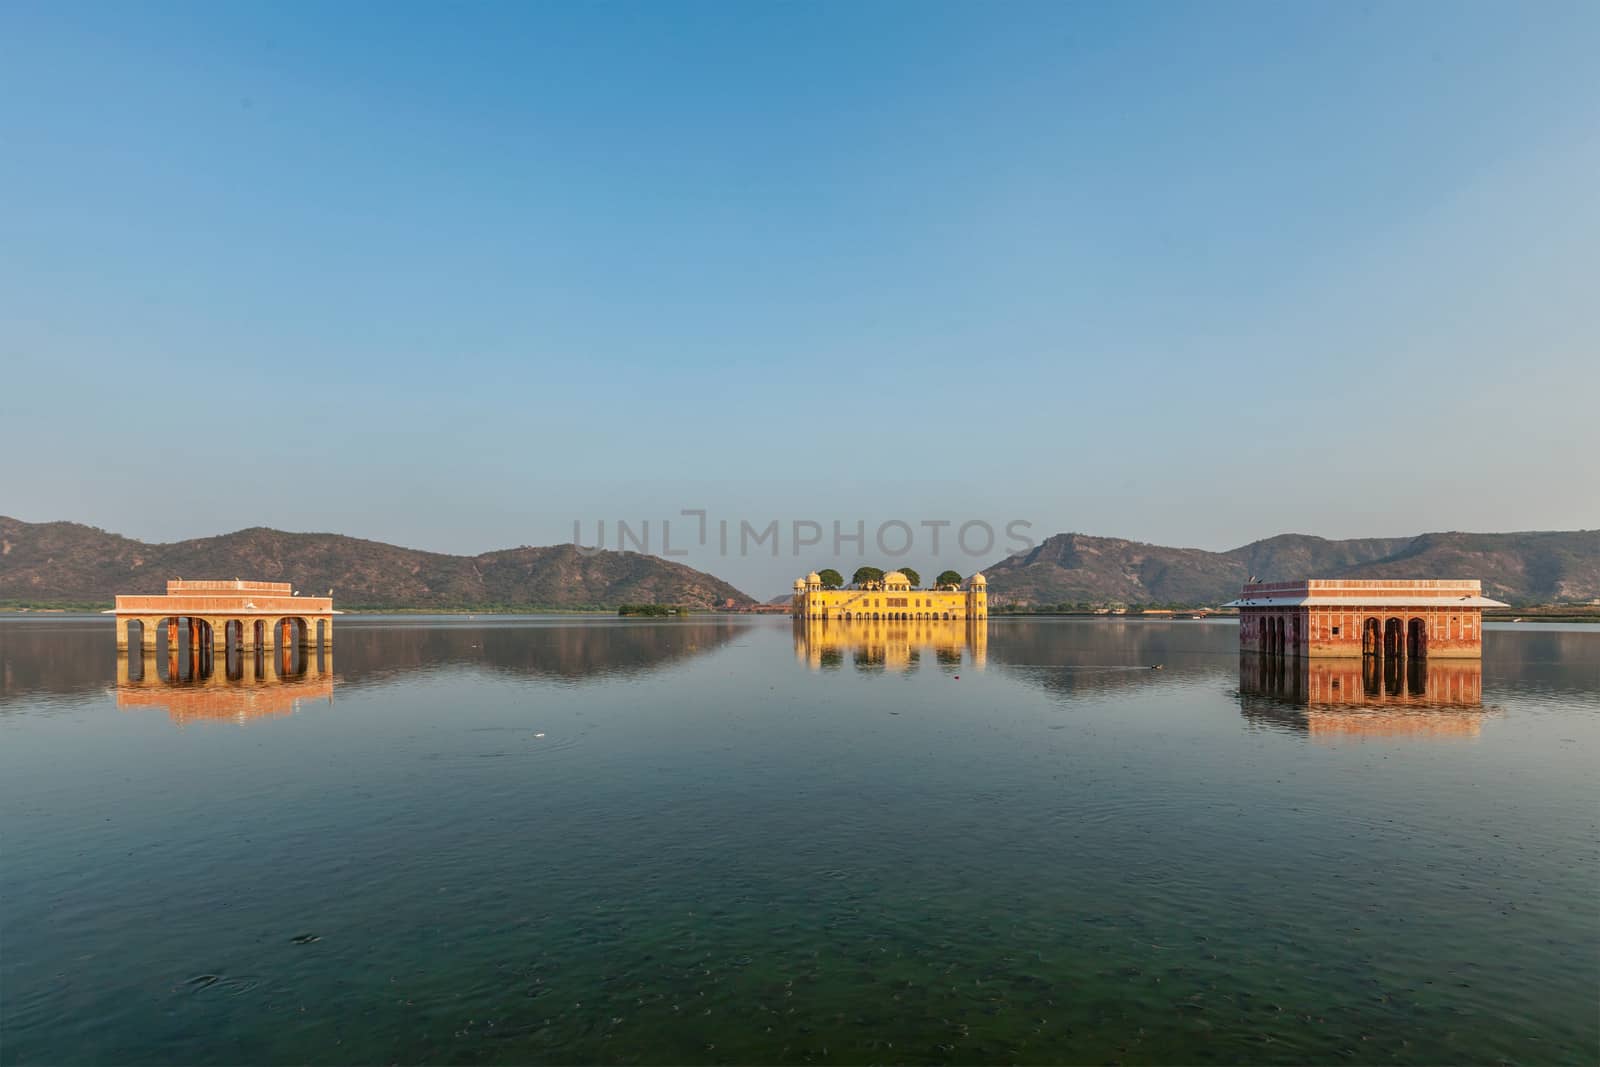 Rajasthan landmark - Jal Mahal (Water Palace) on Man Sagar Lake on sunset.  Jaipur, Rajasthan, India